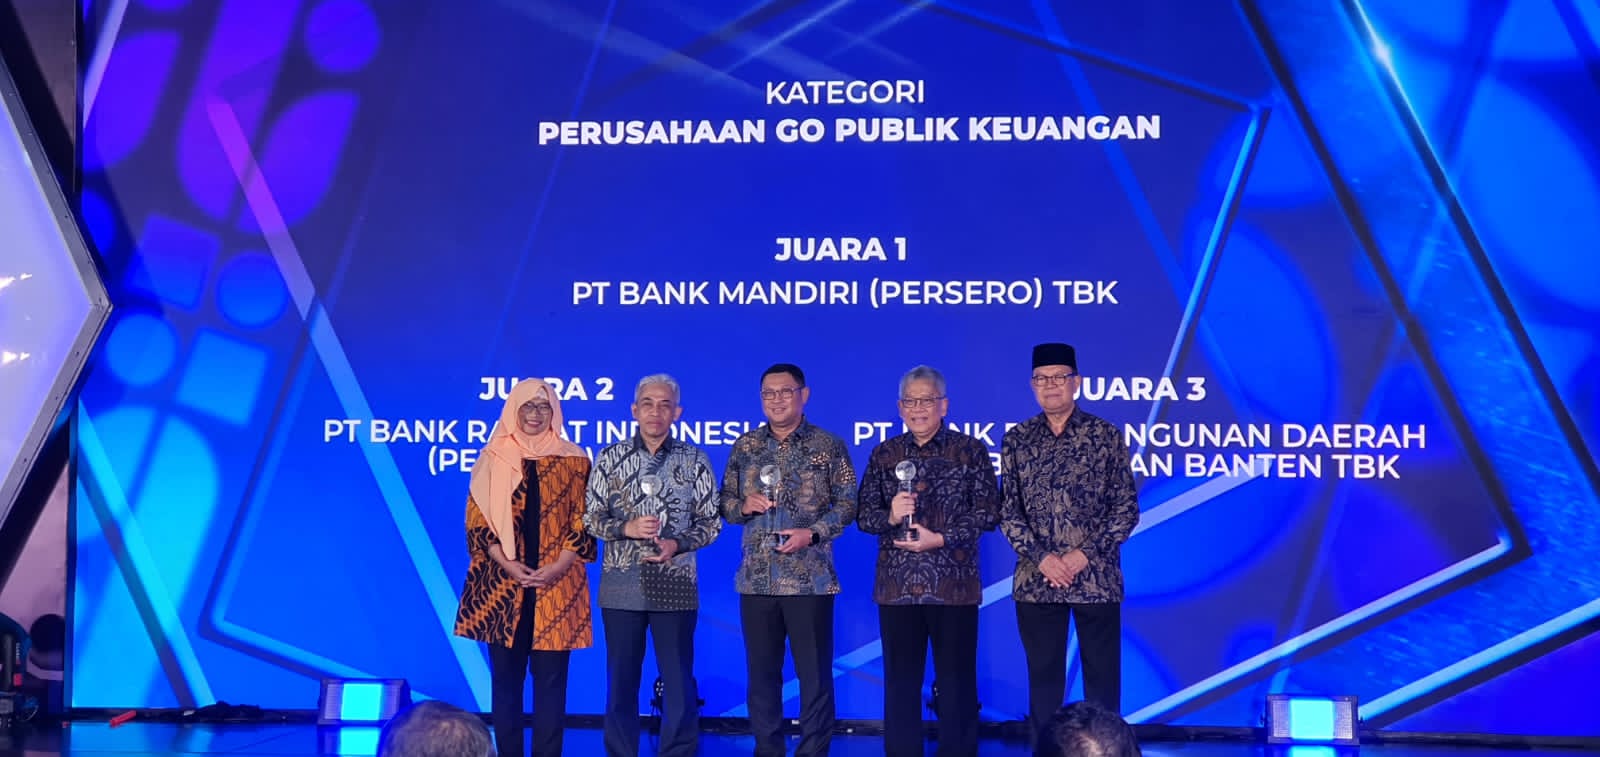 Bank Mandiri kembali berhasil meraih gelar Juara 1 di ajang penganugerahan Annual Report Award (ARA) 2022 dalam kategori Go Publik Keuangan. 